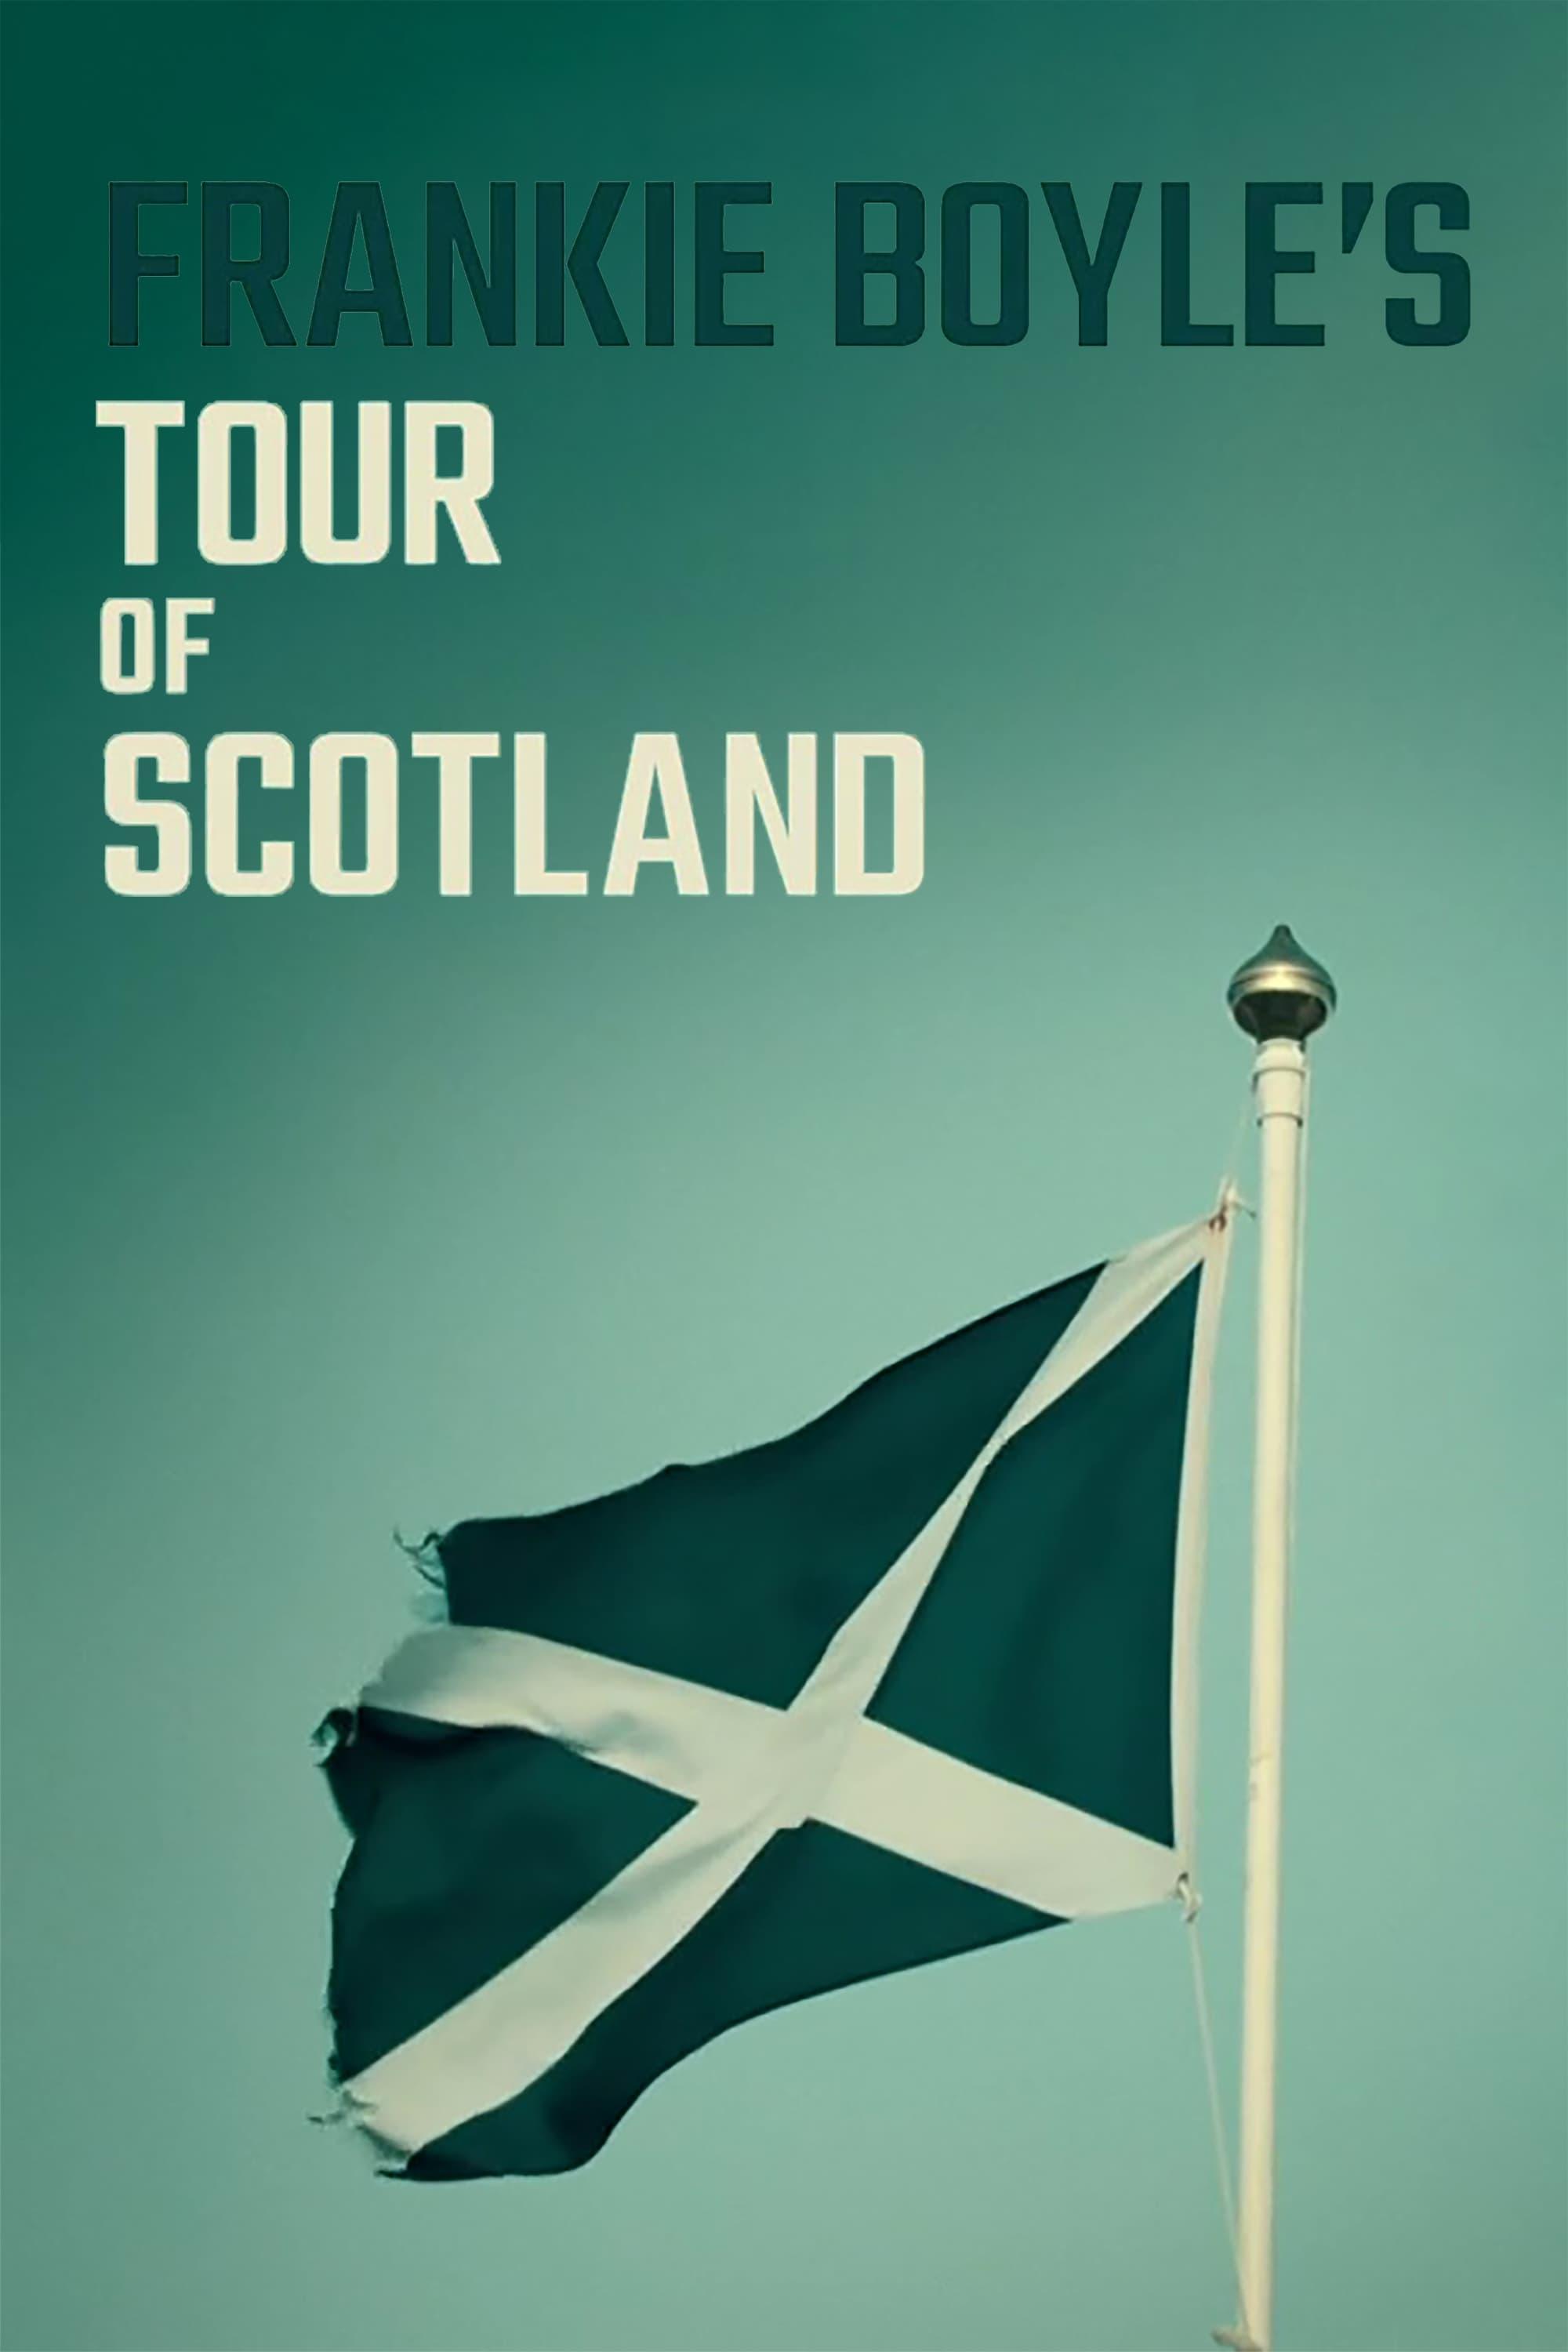 Frankie Boyle's Tour of Scotland poster